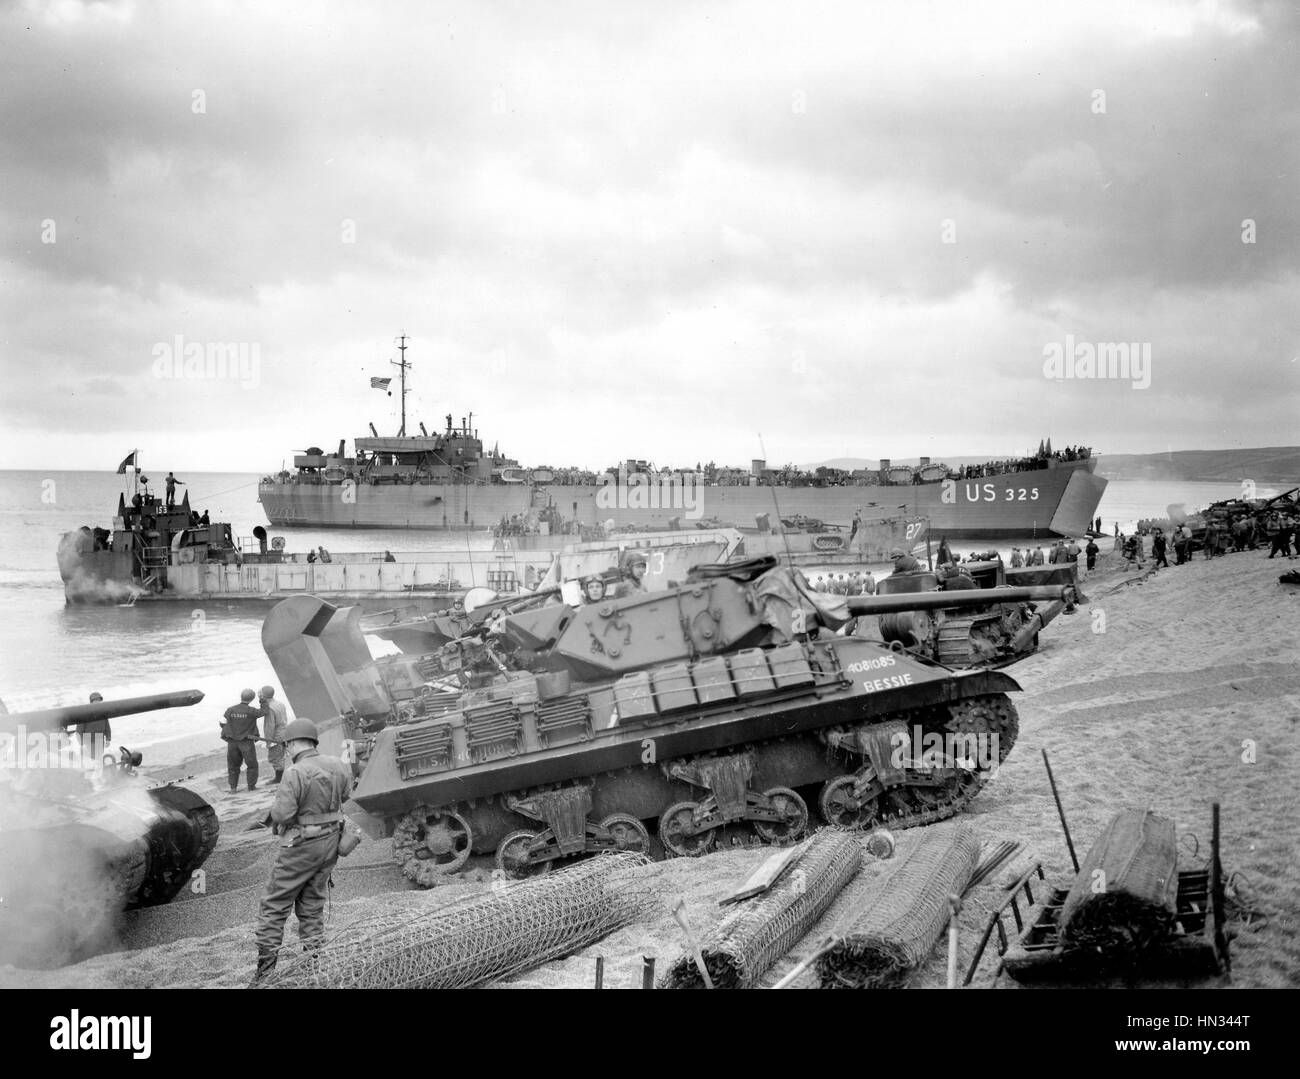 Normandie, France, le 6 juin 1944. D-Day, le débarquement des soldats alliés à partir de navires de transport, la seconde guerre mondiale Banque D'Images